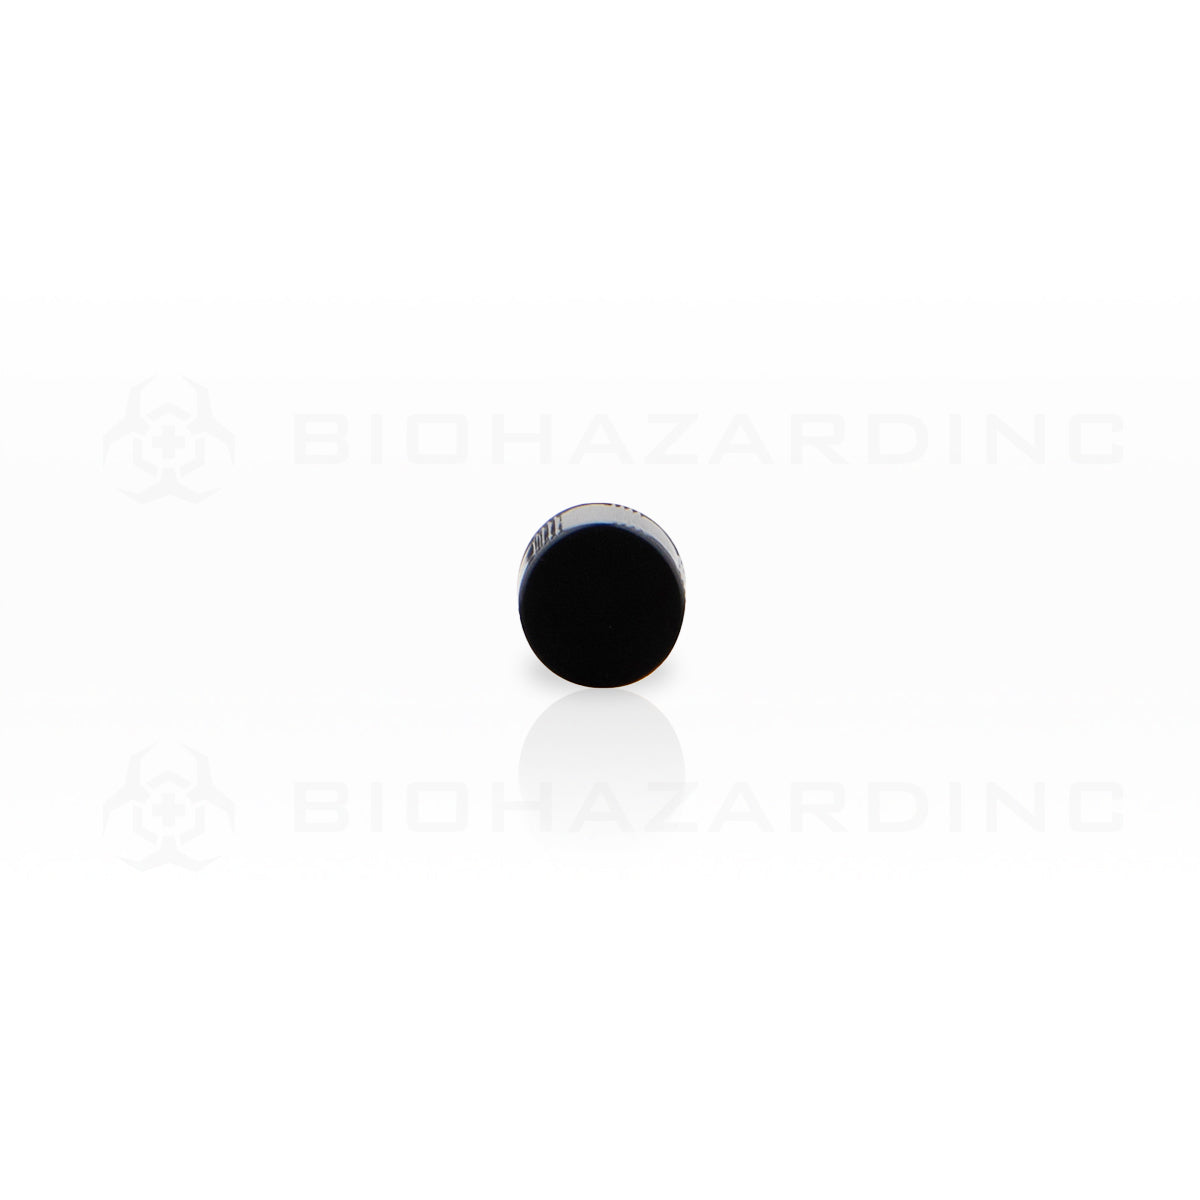 Plastic Cap | Phenolic Caps | 13mm - Black - 144 Count Cap Biohazard Inc   